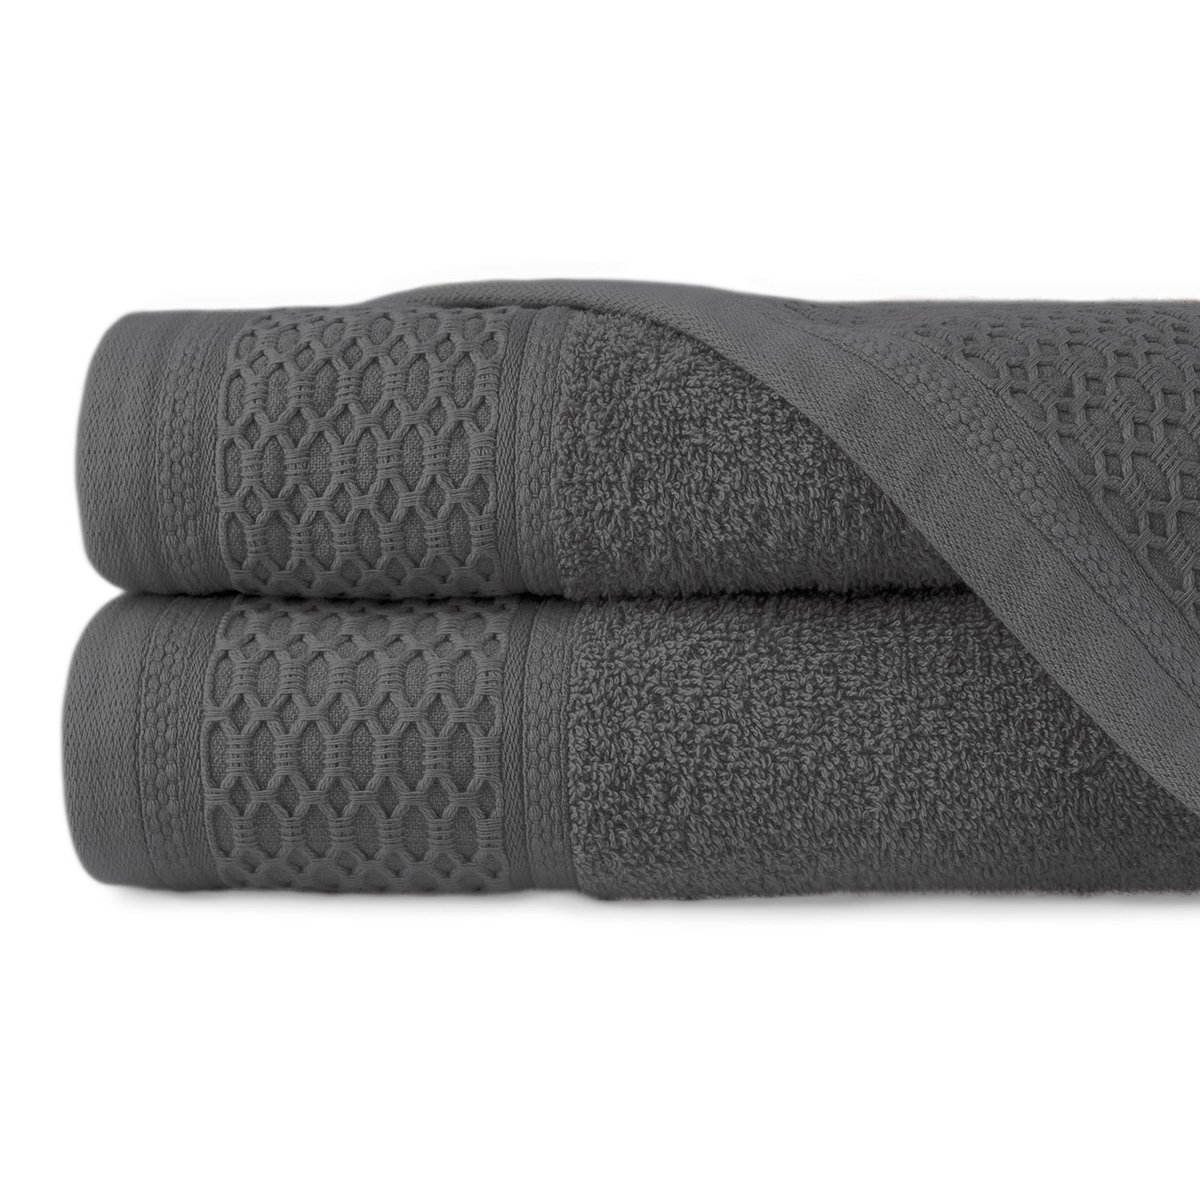 Zdjęcia - Ręcznik Solano  bawełniany szybkoschnący 50x90 cm  kąpielowy, 100 bawełna, D 